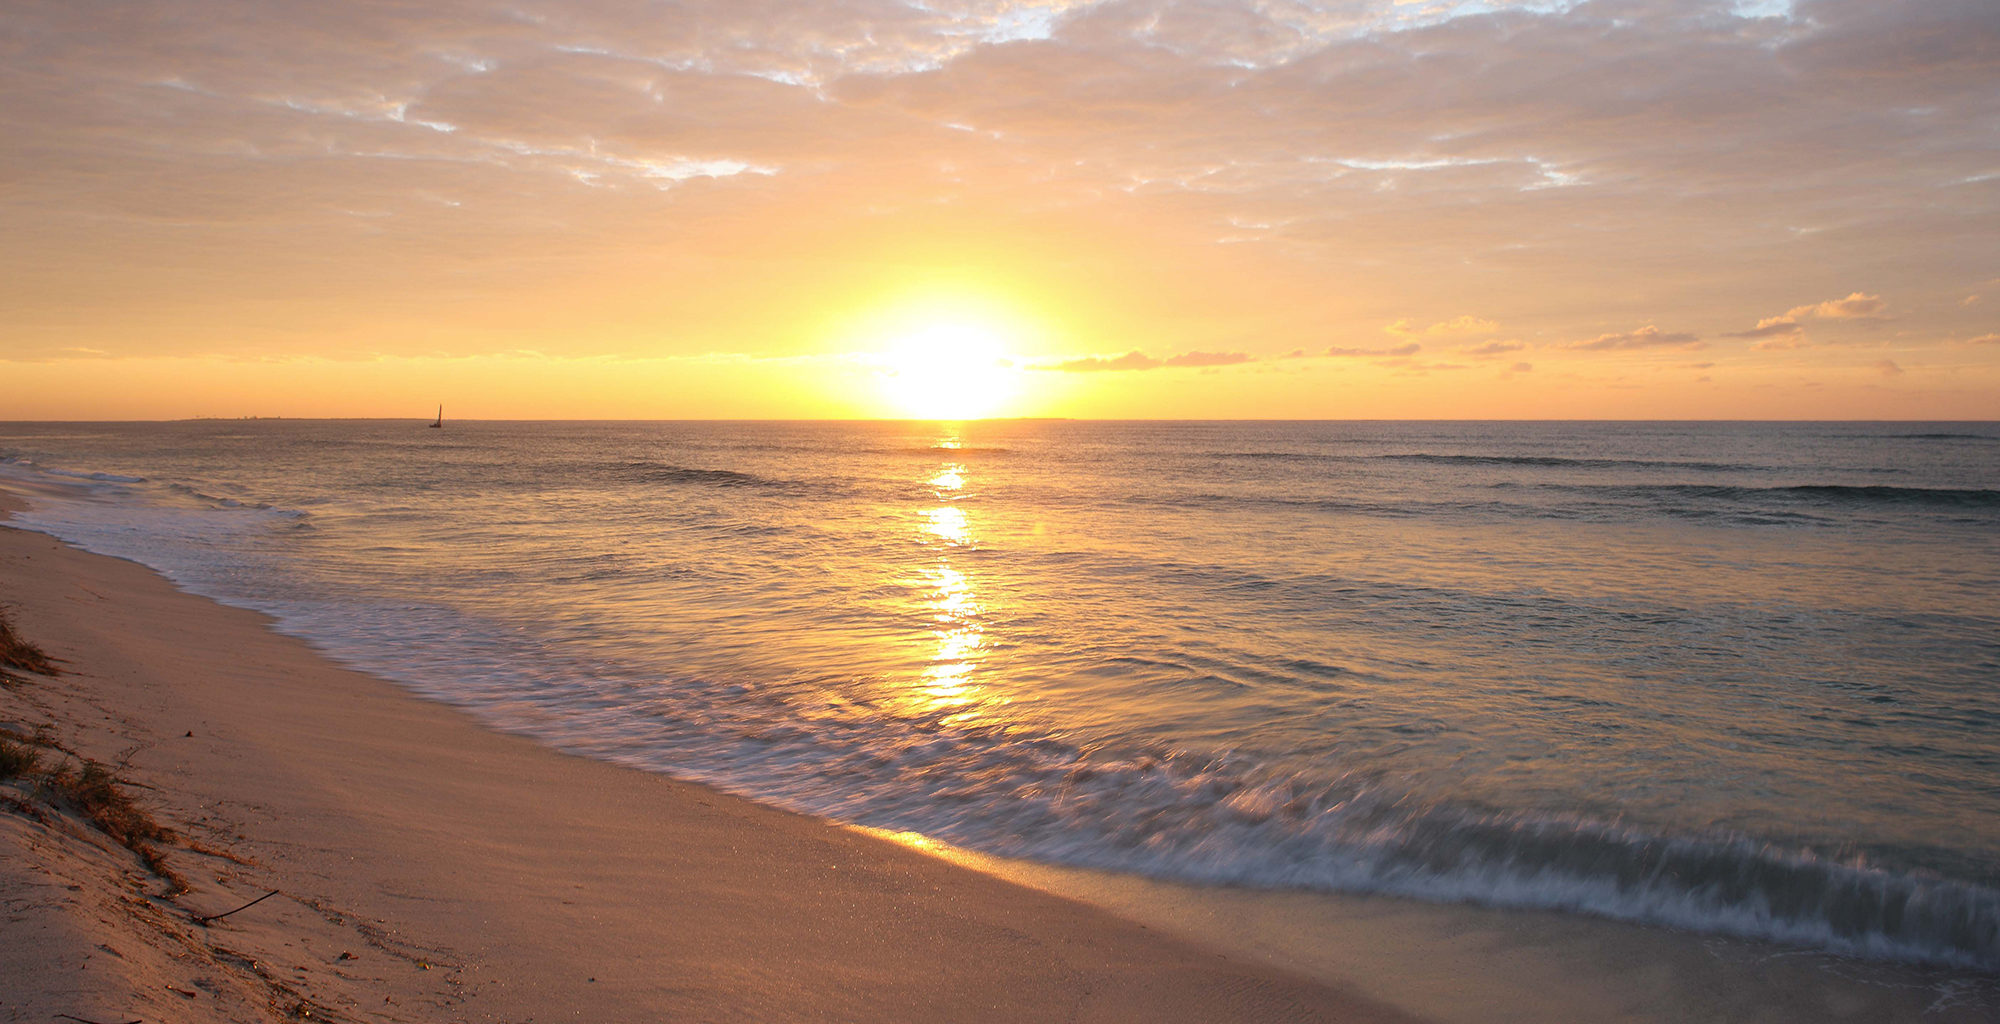 Illha-de-Mozambique-Nampula-Beach-Sunset